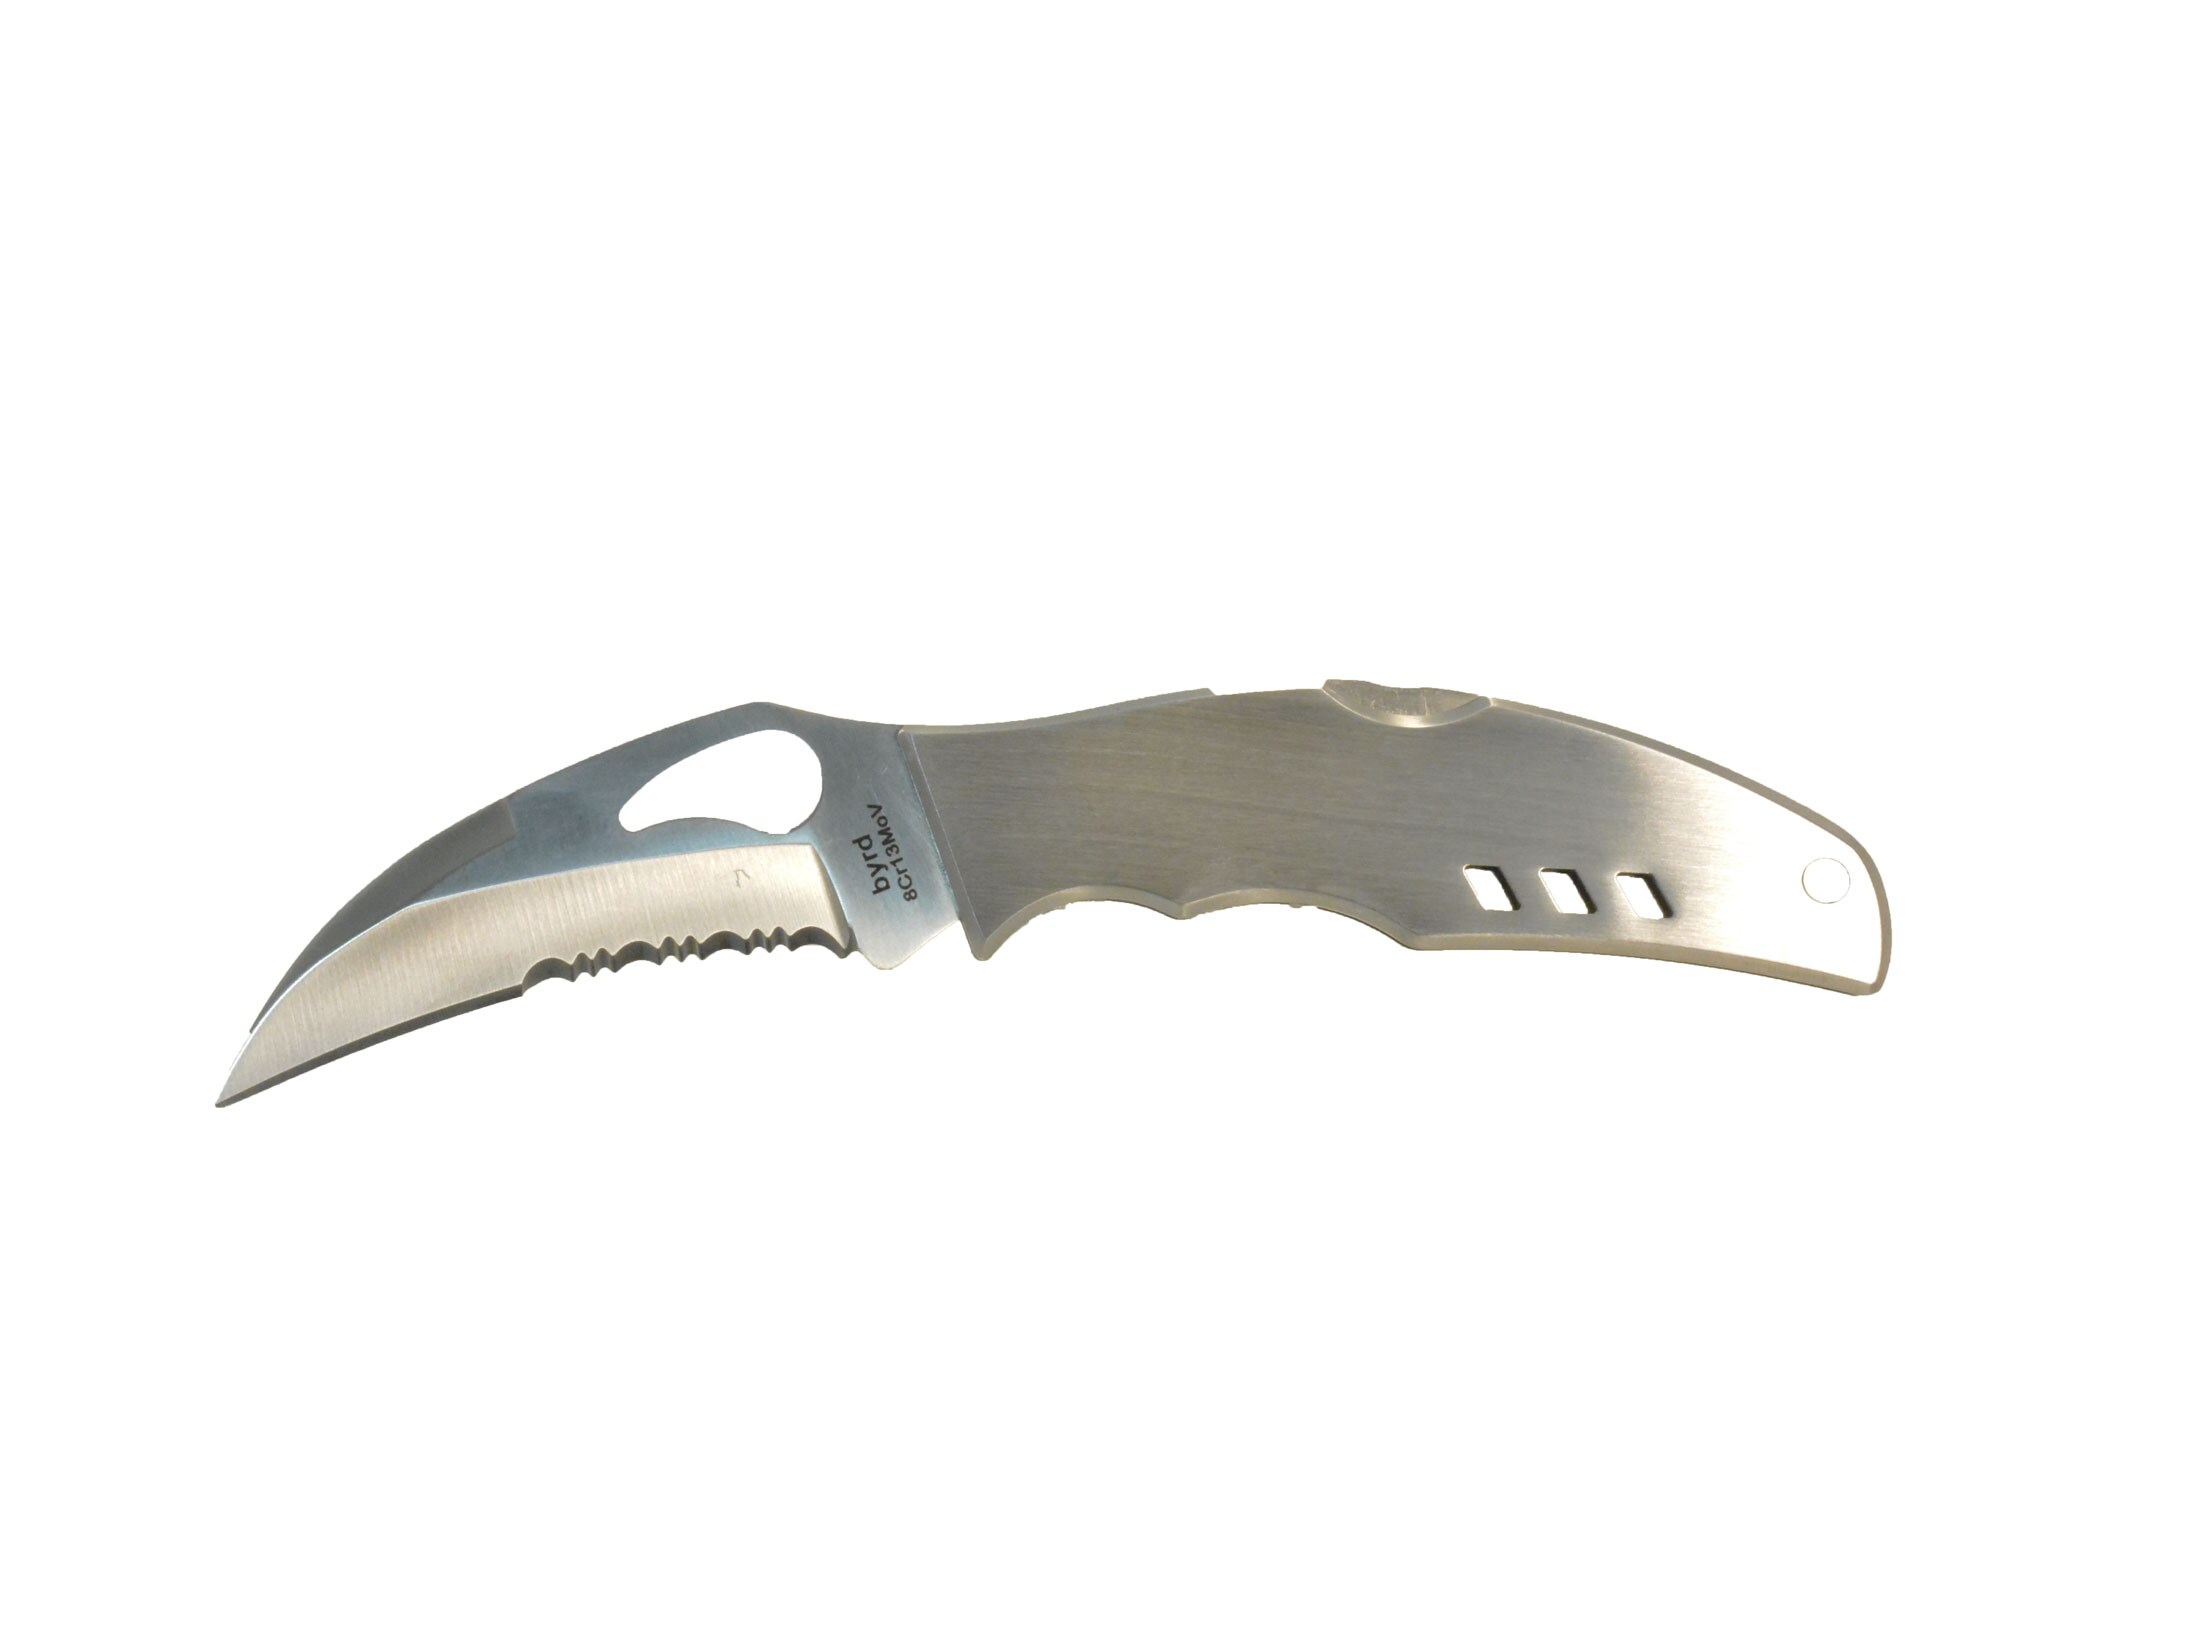 Byrd Crossbill Folding Knife 3.5 Partially Serrated Hawkbill 8Cr13MoV